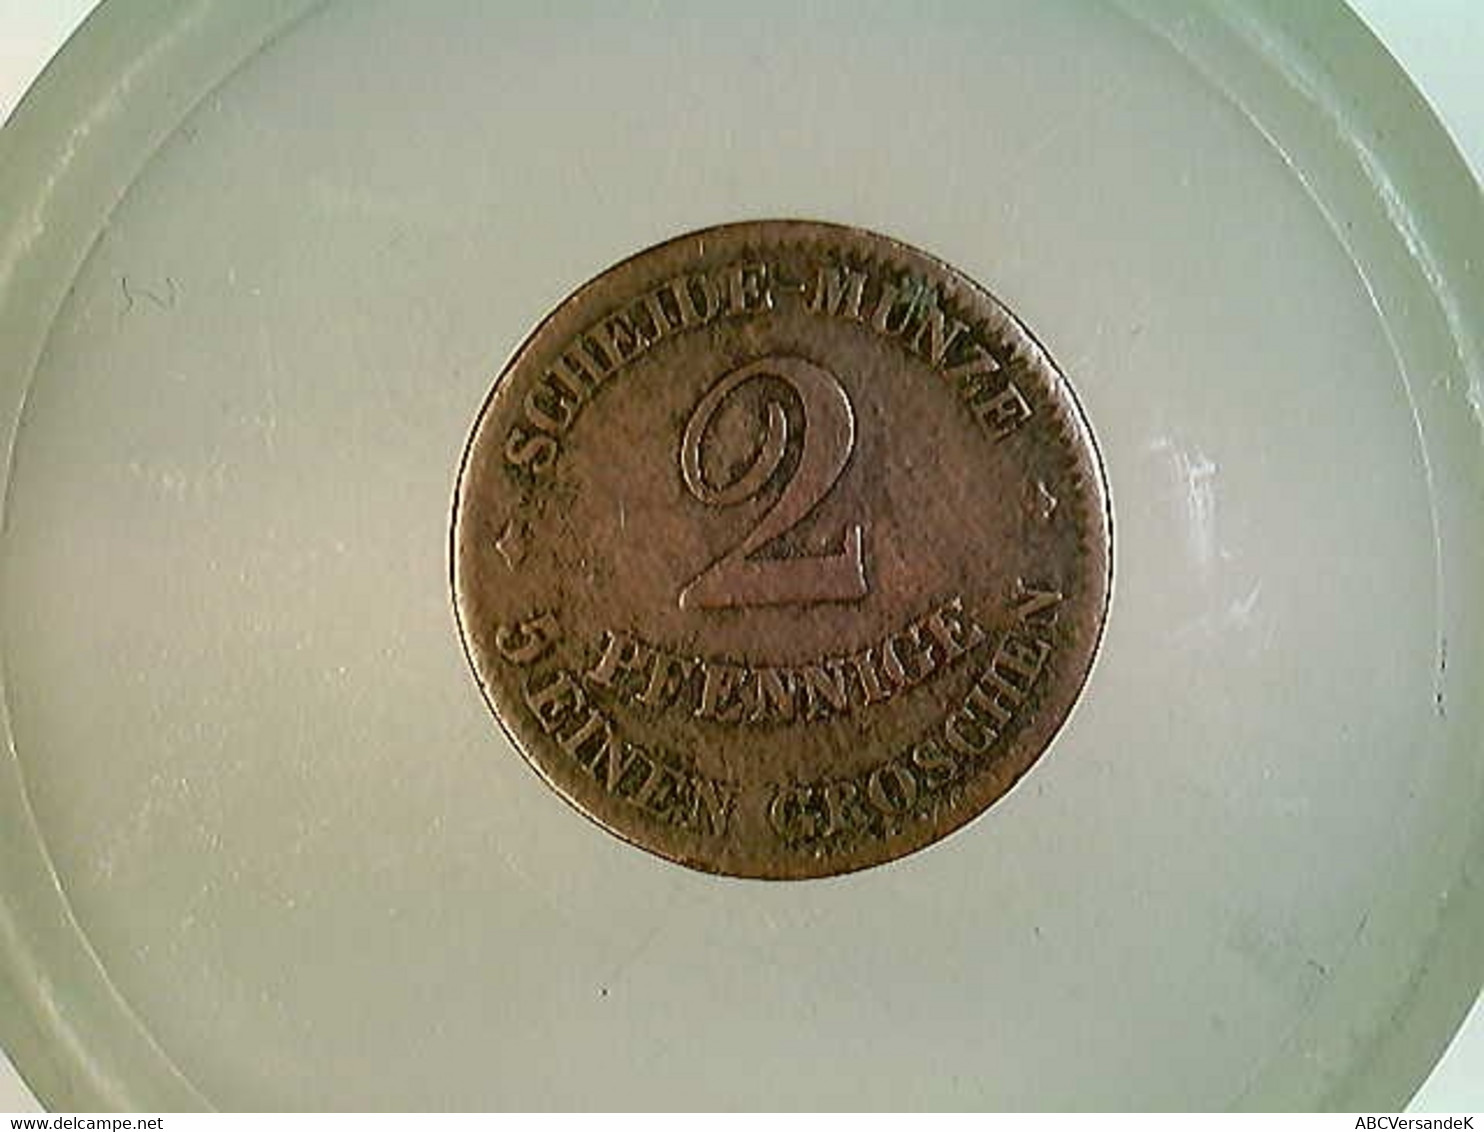 Münze, 2 Pfennige, 1856 F, 5 Einen Groschen, Herzogthum Sachsen Coburg Gotha - Numismatics